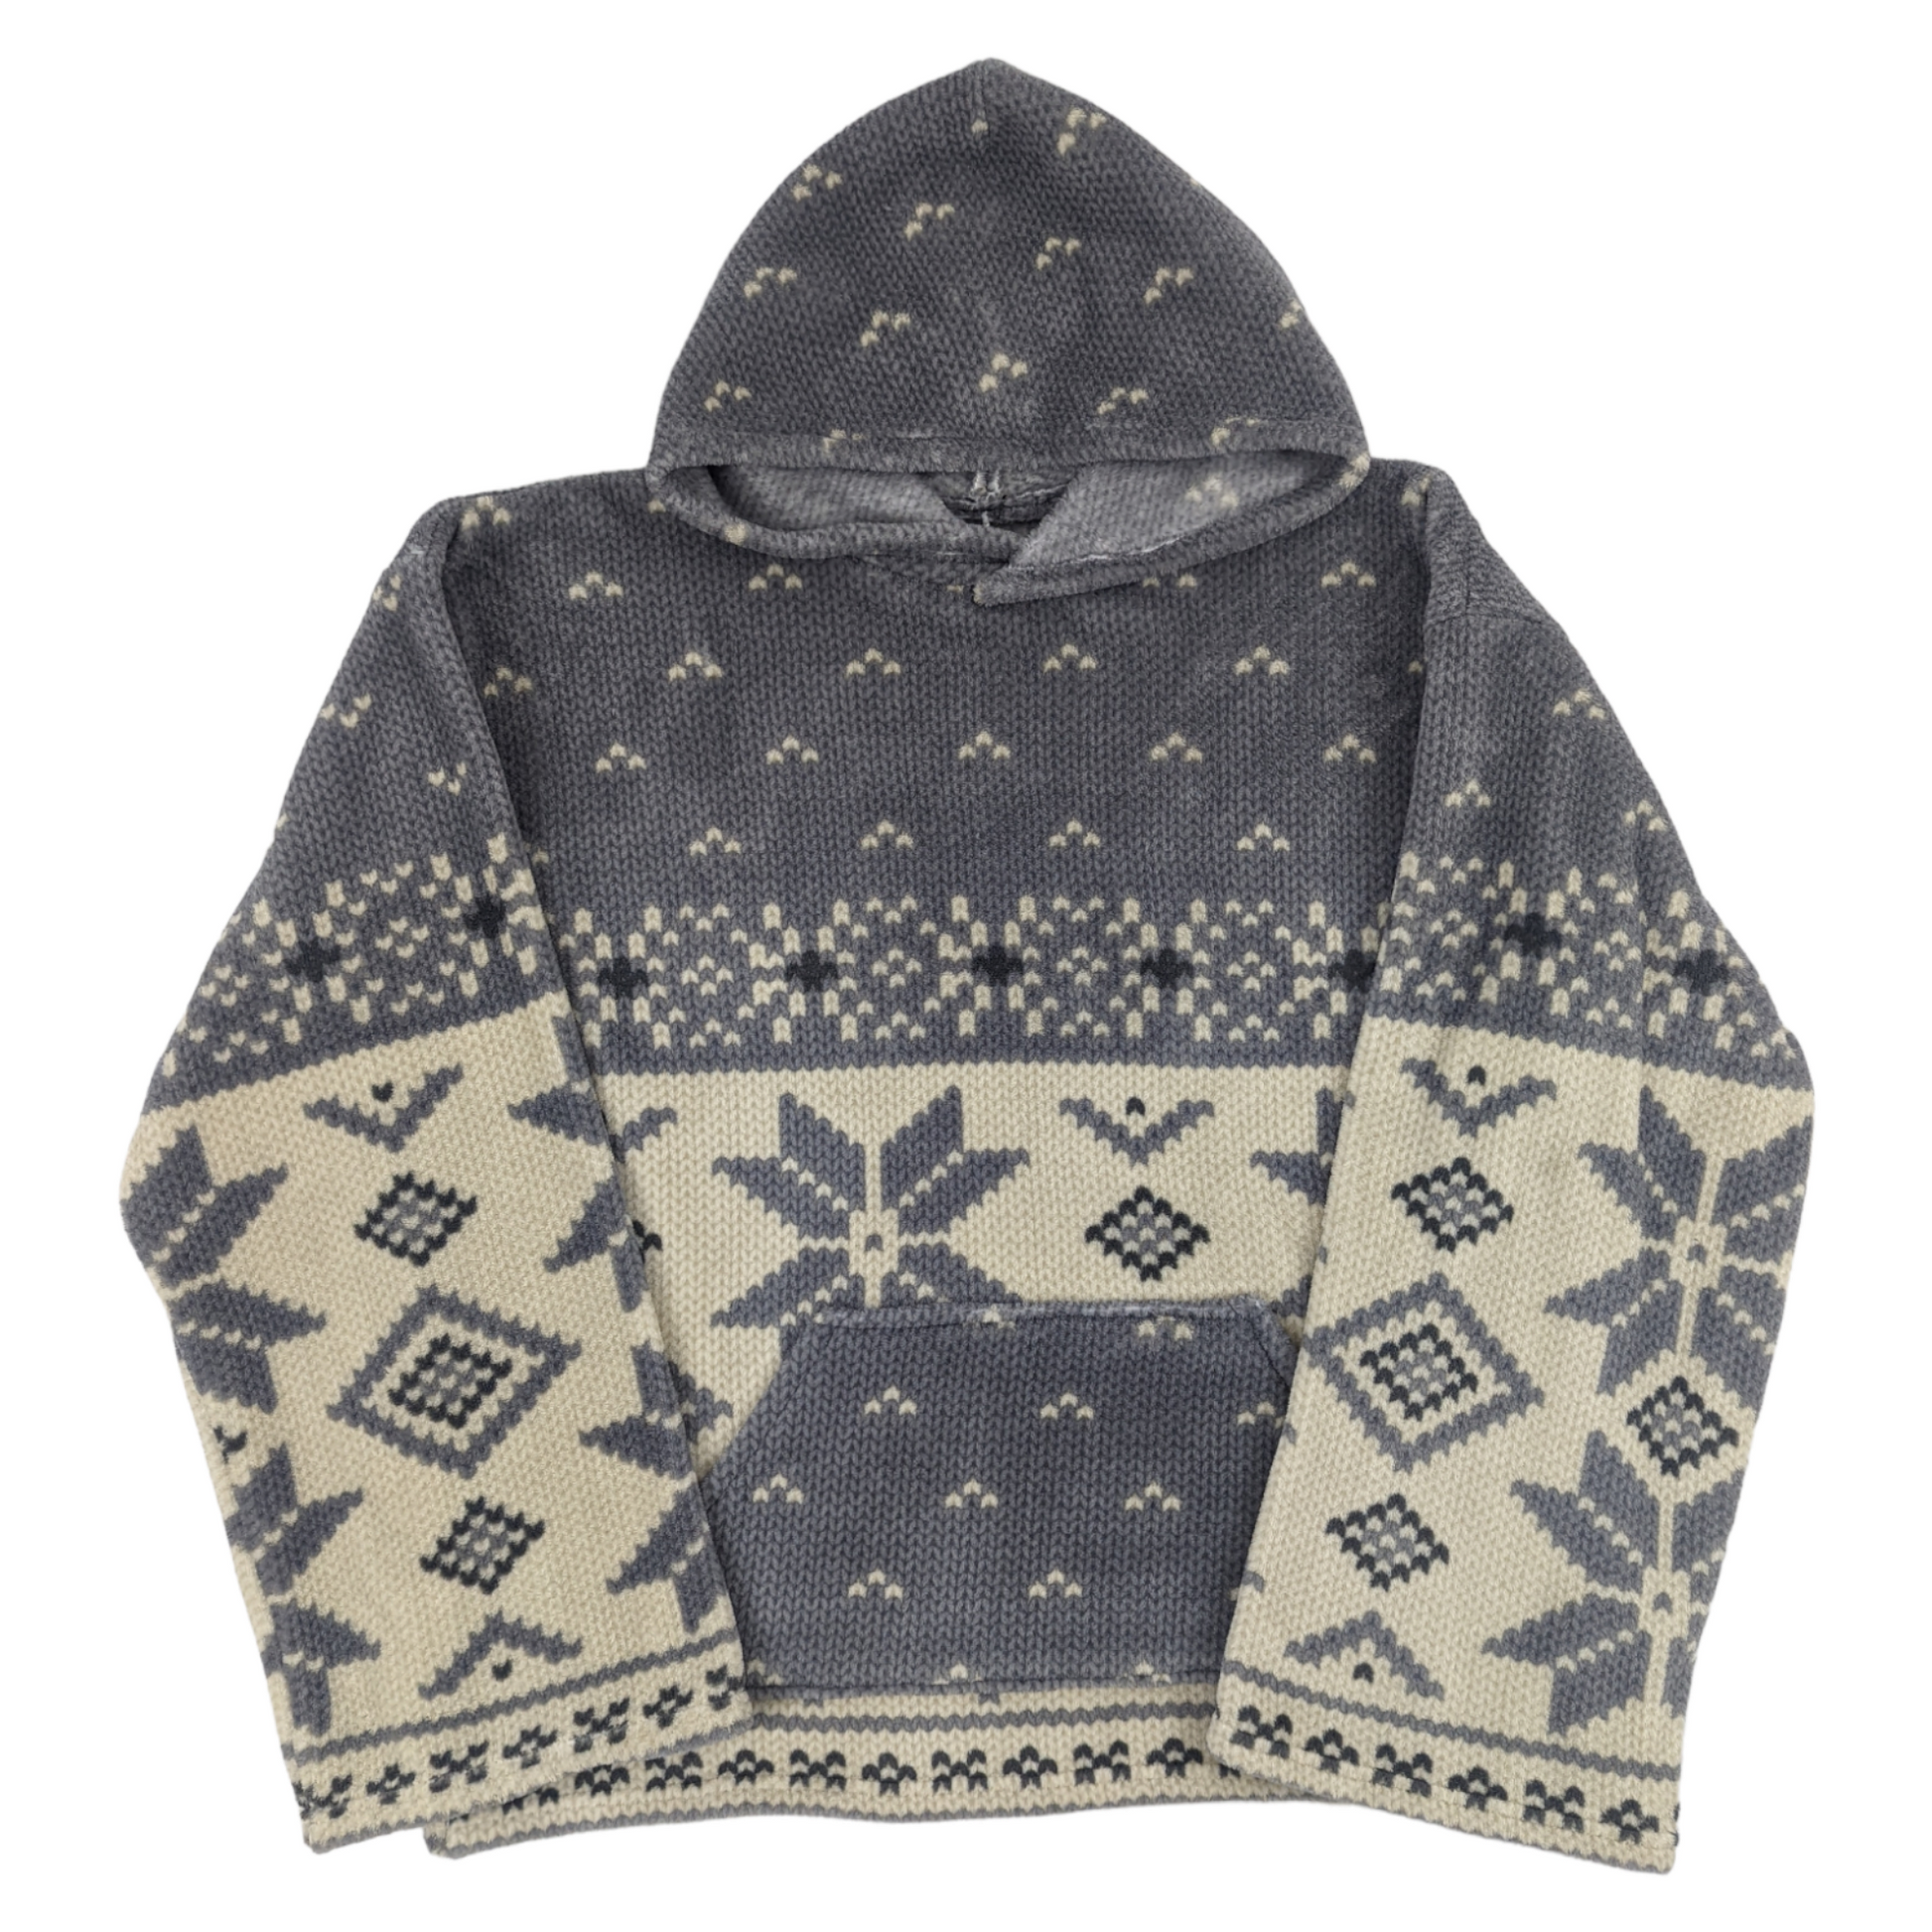 Flat lay of fleece hoodie with snowflake pattern in crochet print.